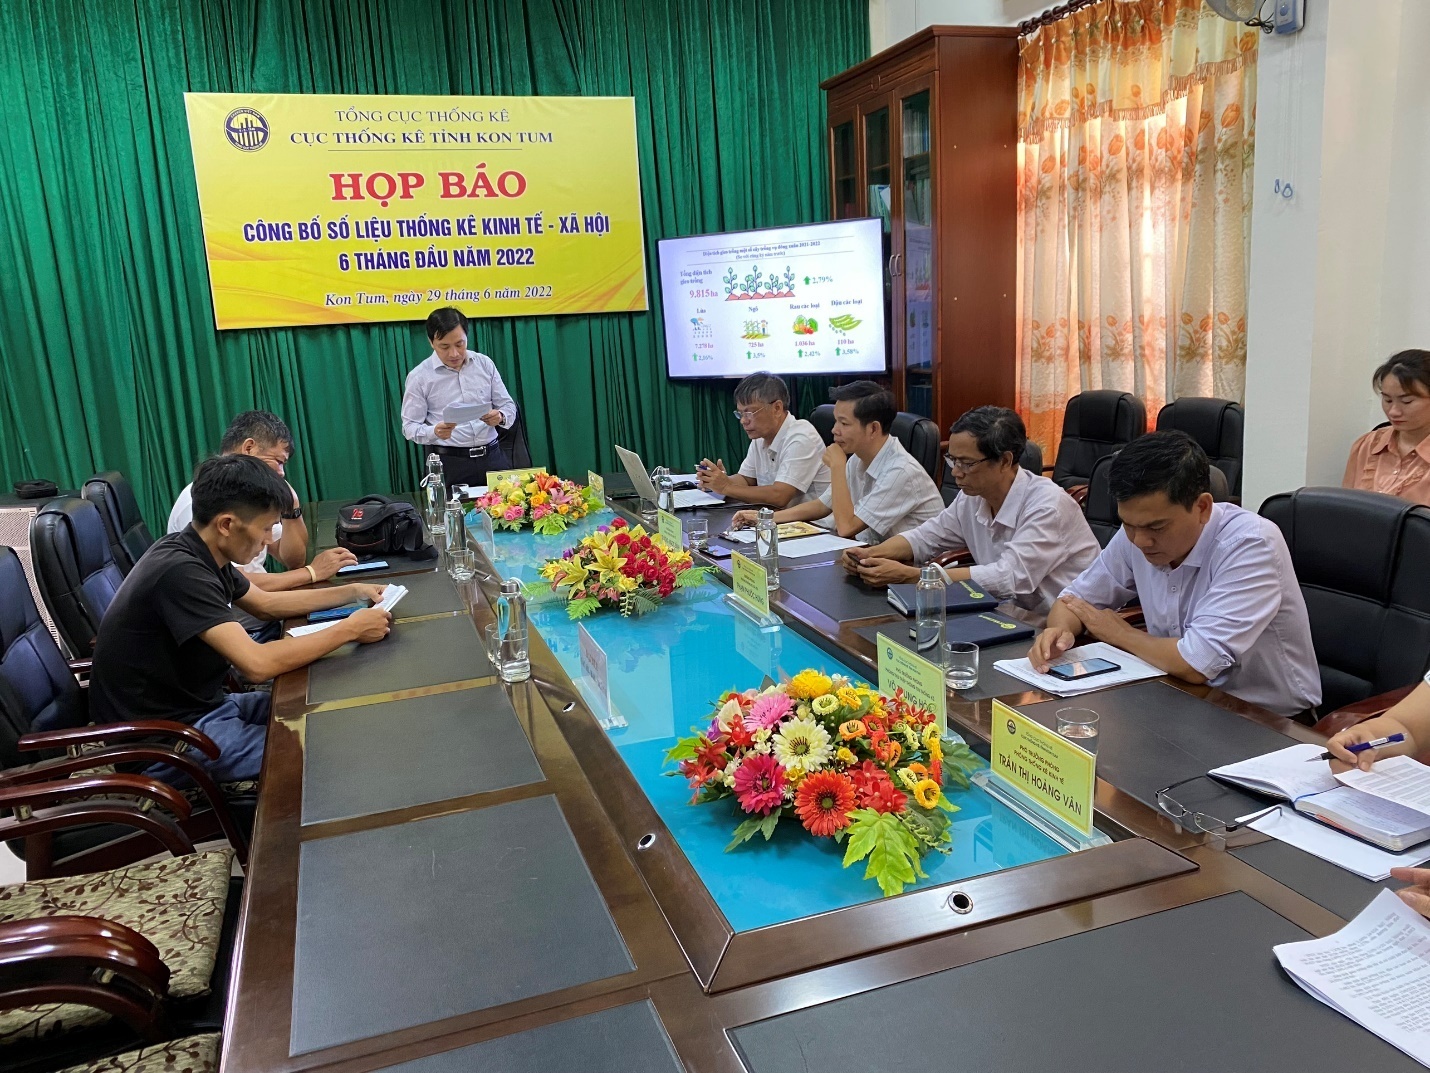 Cục Thống kê tỉnh Kon Tum tổ chức họp báo công bố số liệu thống kê kinh tế - xã hội 6 tháng đầu năm 2022